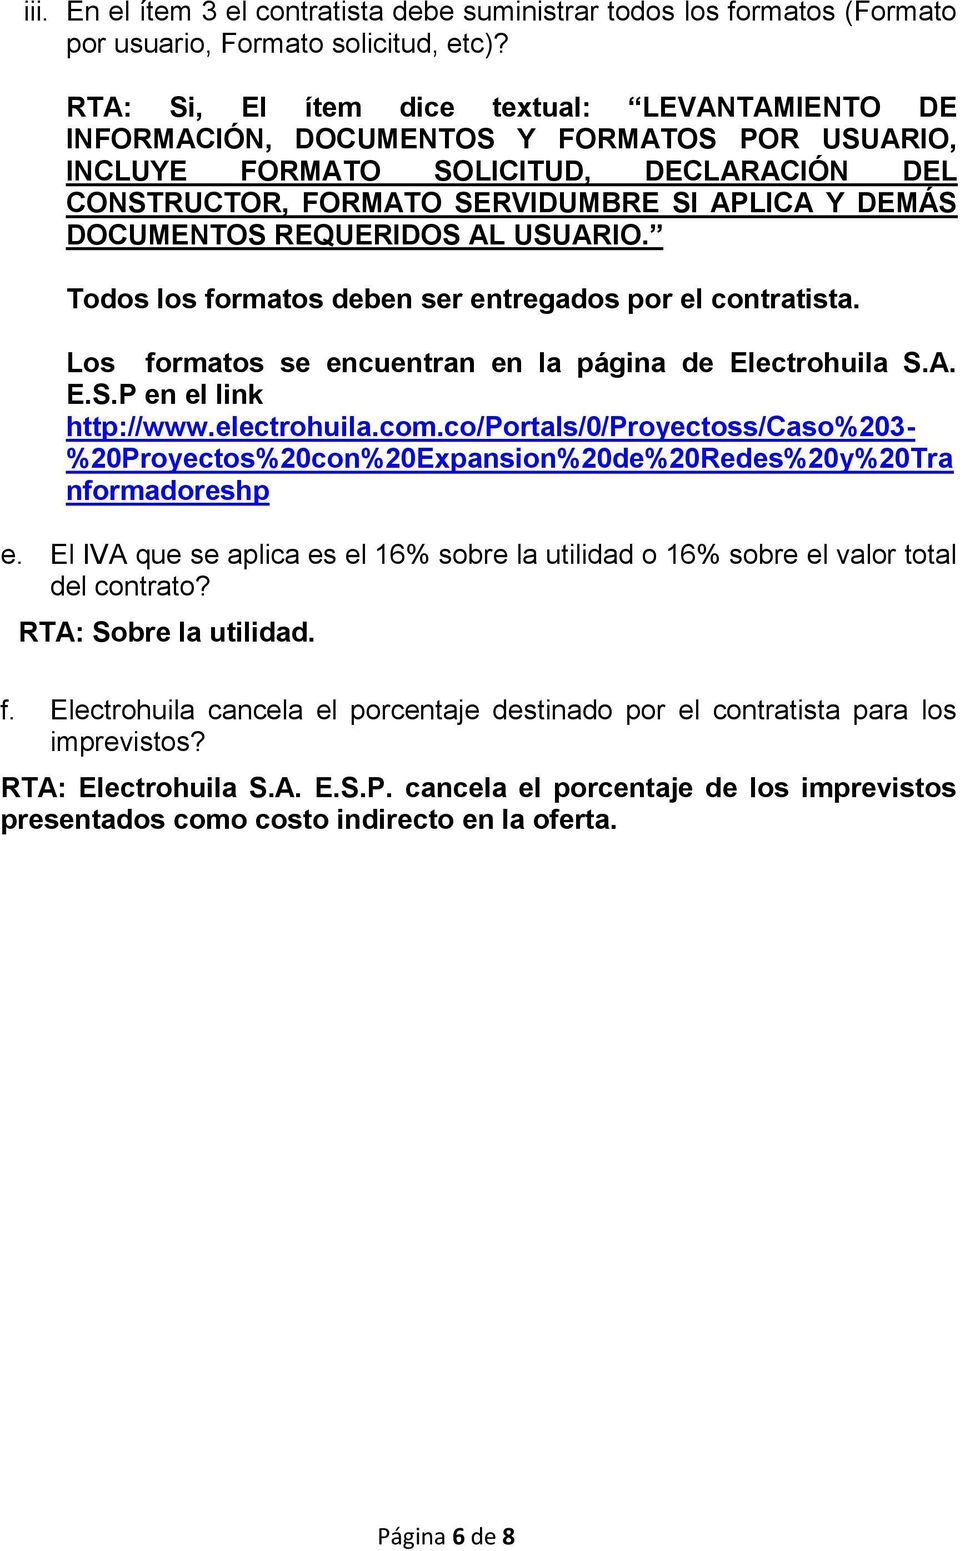 DOCUMENTOS REQUERIDOS AL USUARIO. Todos los formatos deben ser entregados por el contratista. Los formatos se encuentran en la página de Electrohuila S.A. E.S.P en el link http://www.electrohuila.com.